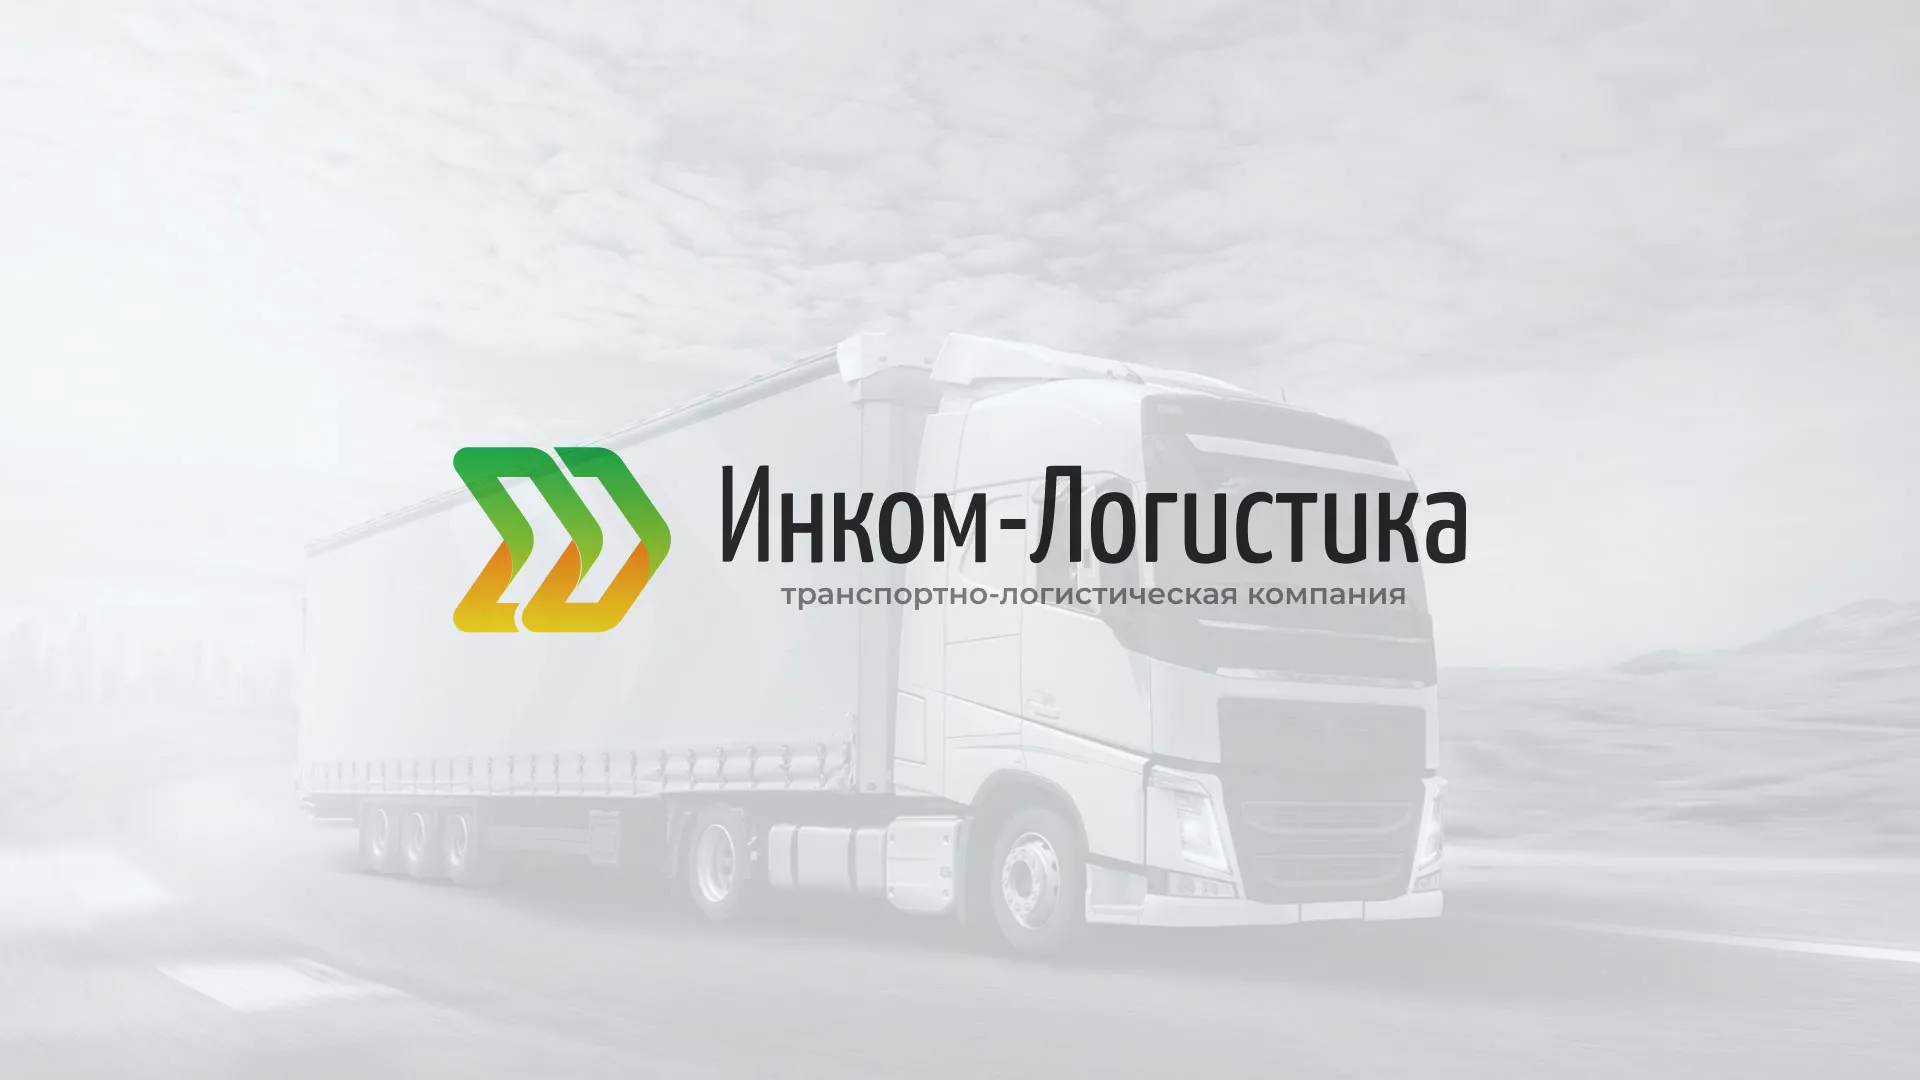 Разработка логотипа и сайта компании «Инком-Логистика» в Демидове